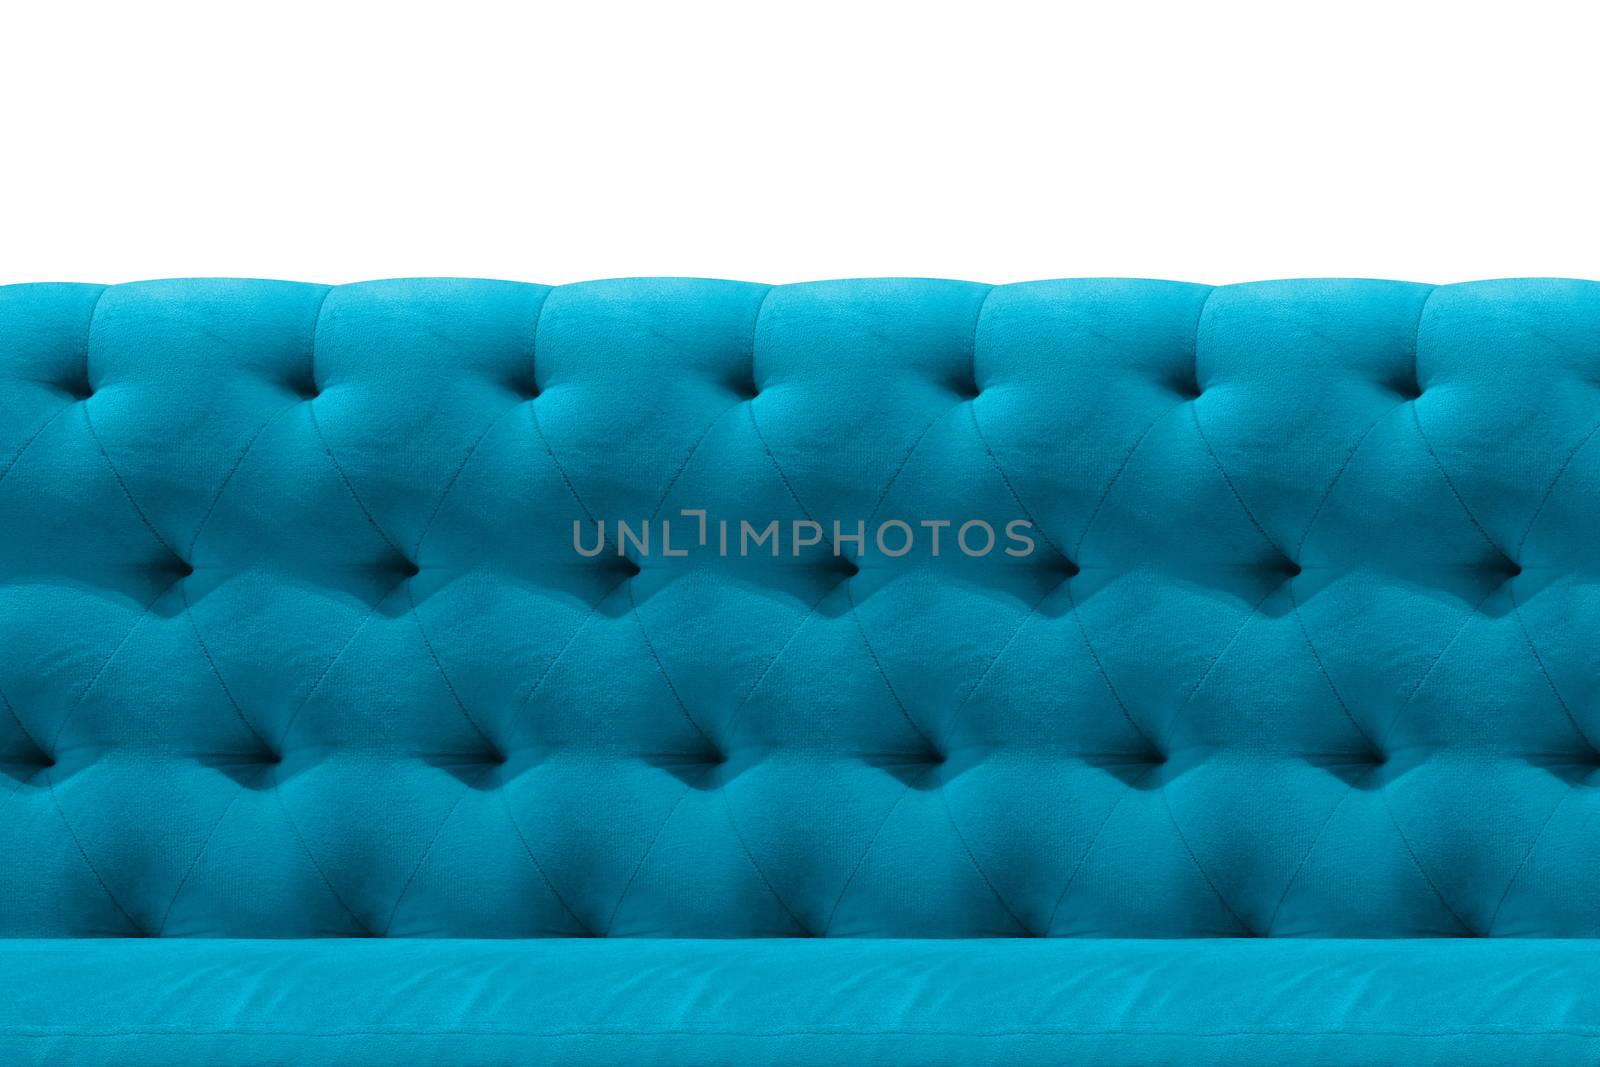 Luxury Light Blue sofa velvet cushion close-up pattern background on white